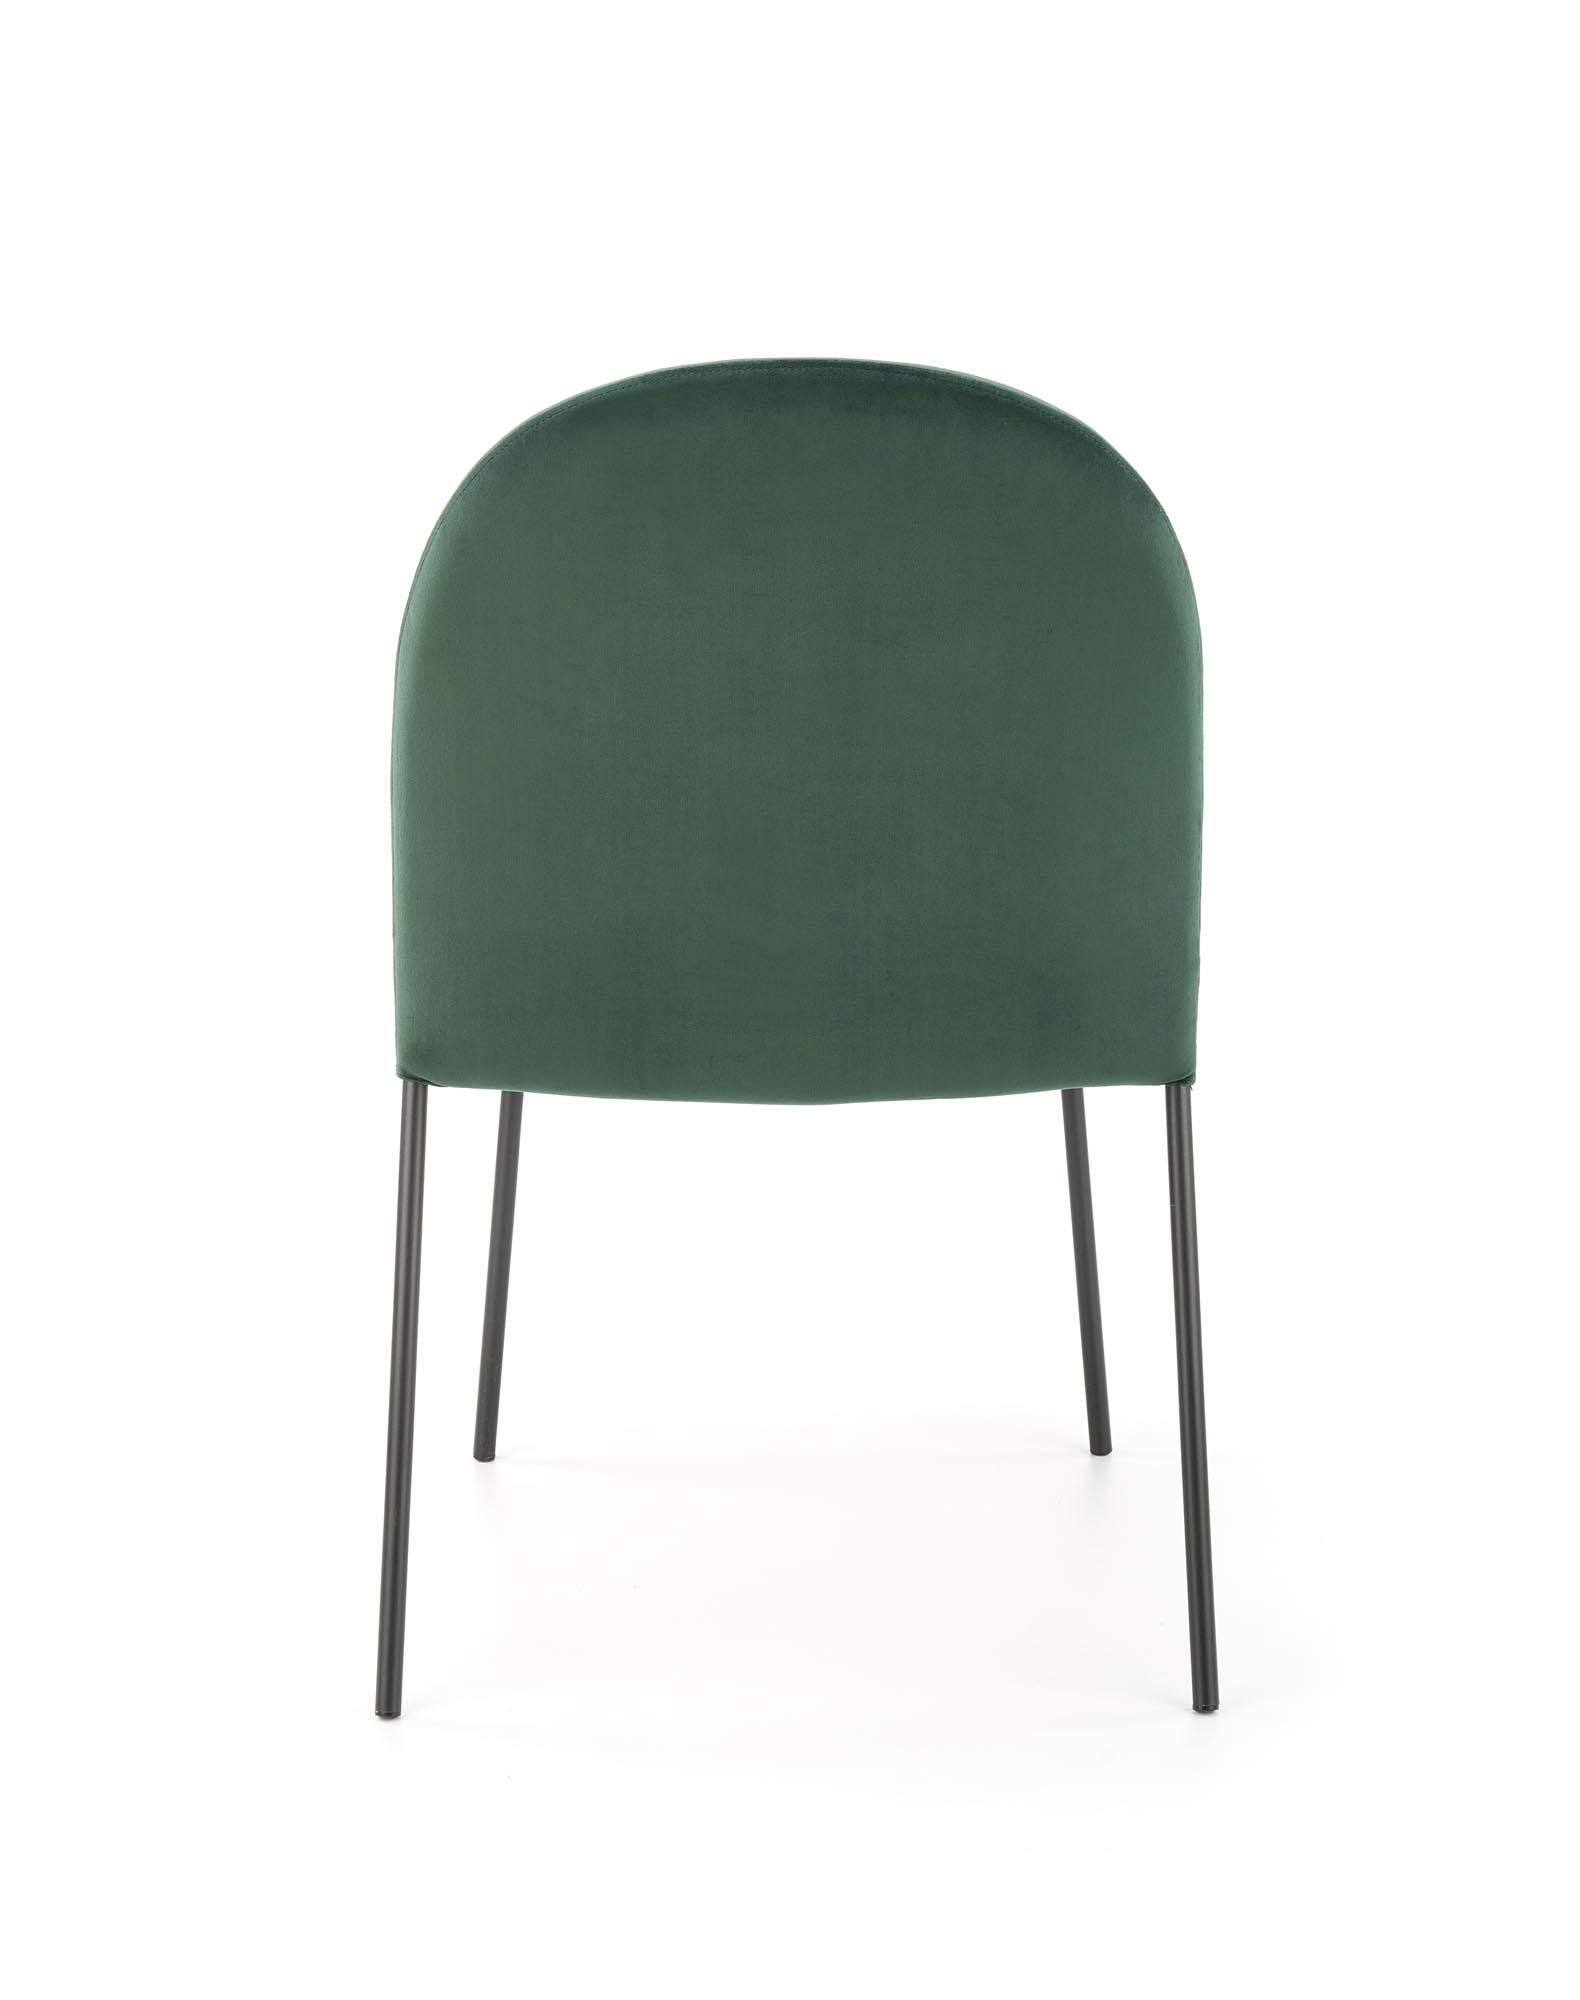 K443 krzesło ciemny zielony k443 krzesło ciemny zielony